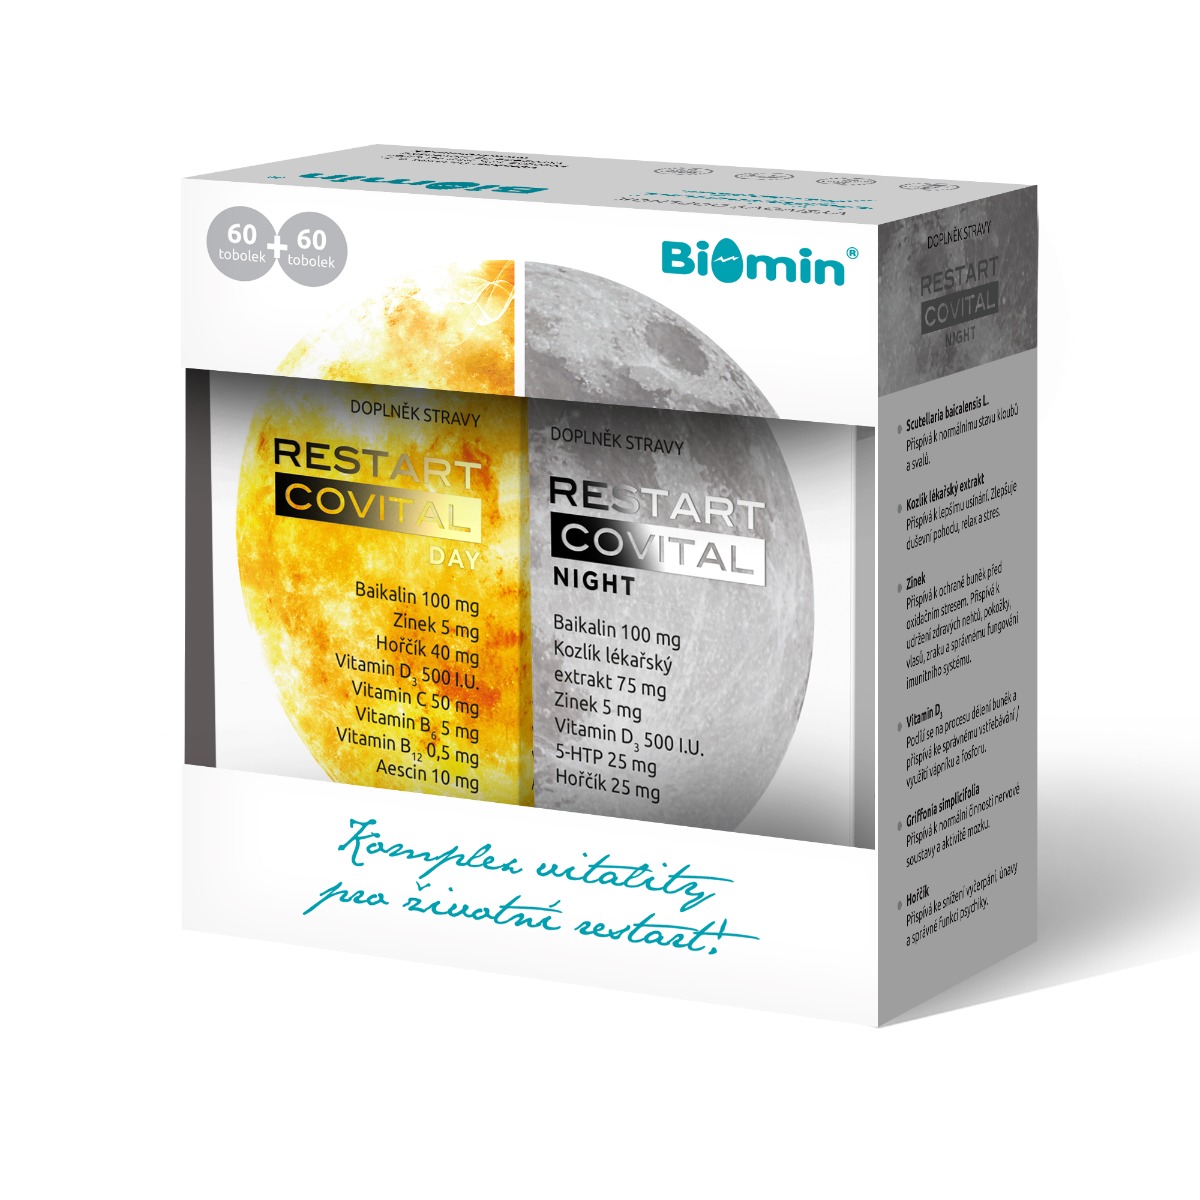 Biomin Restart Covital DAY+NIGHT dárkové balení 60+60 tobolek Biomin